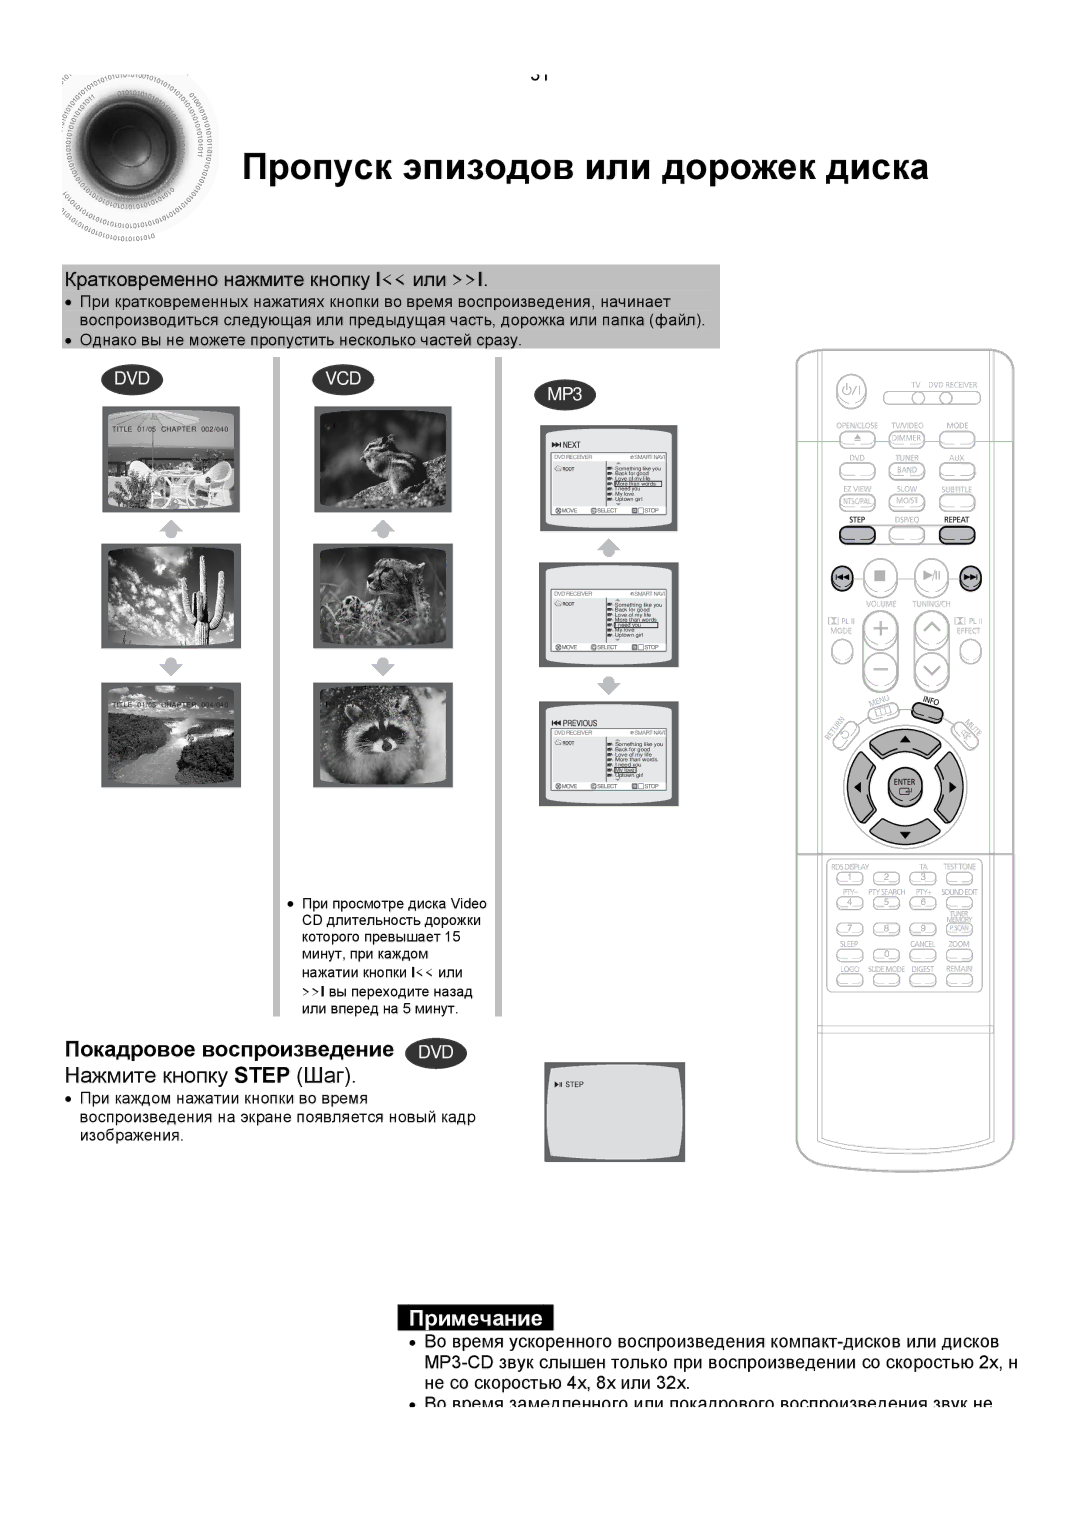 Samsung HTDS400RH/XFO manual Пропуск эпизодов или дорожек диска, Покадровое воспроизведение DVD Нажмите кнопку Step Шаг 